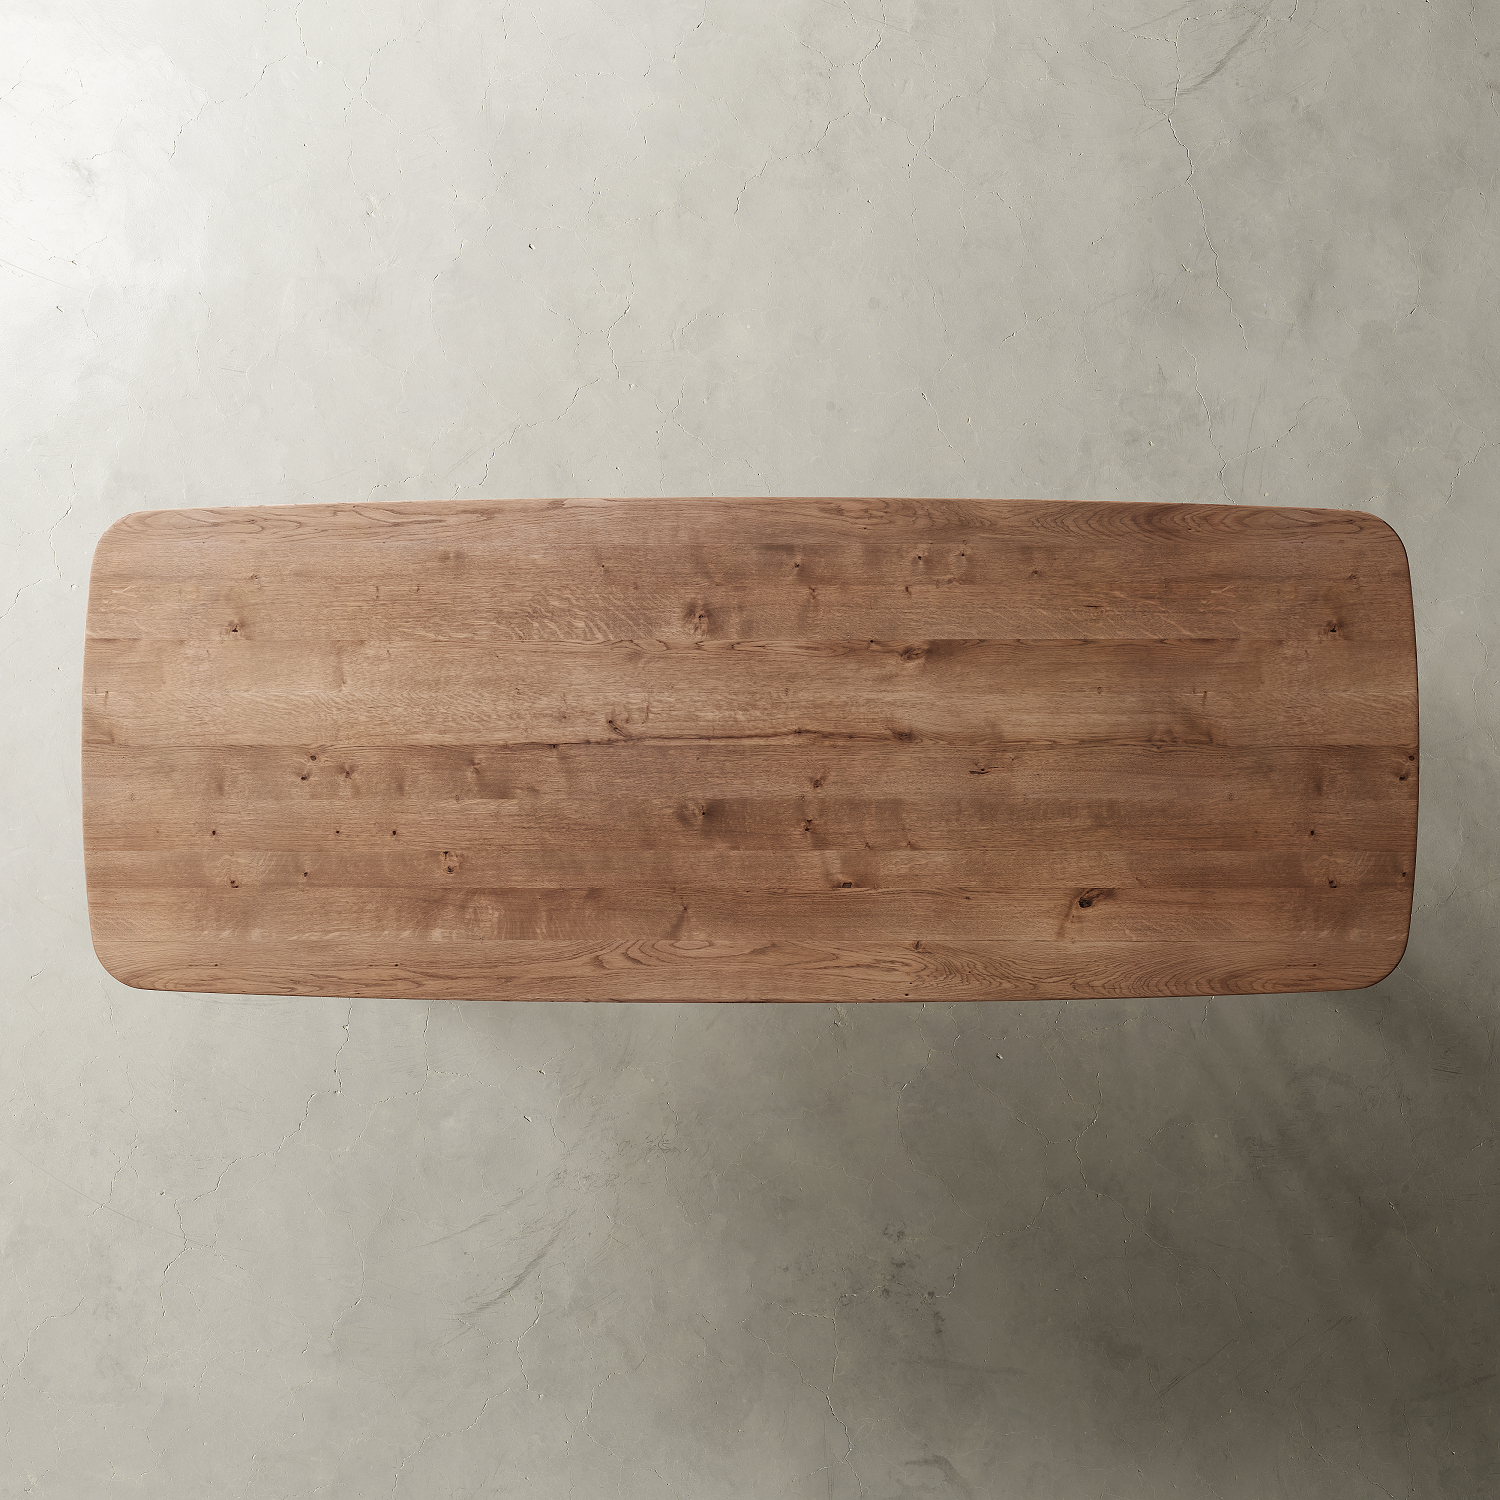 Semi-oval oak table and steel legs • MIKA model